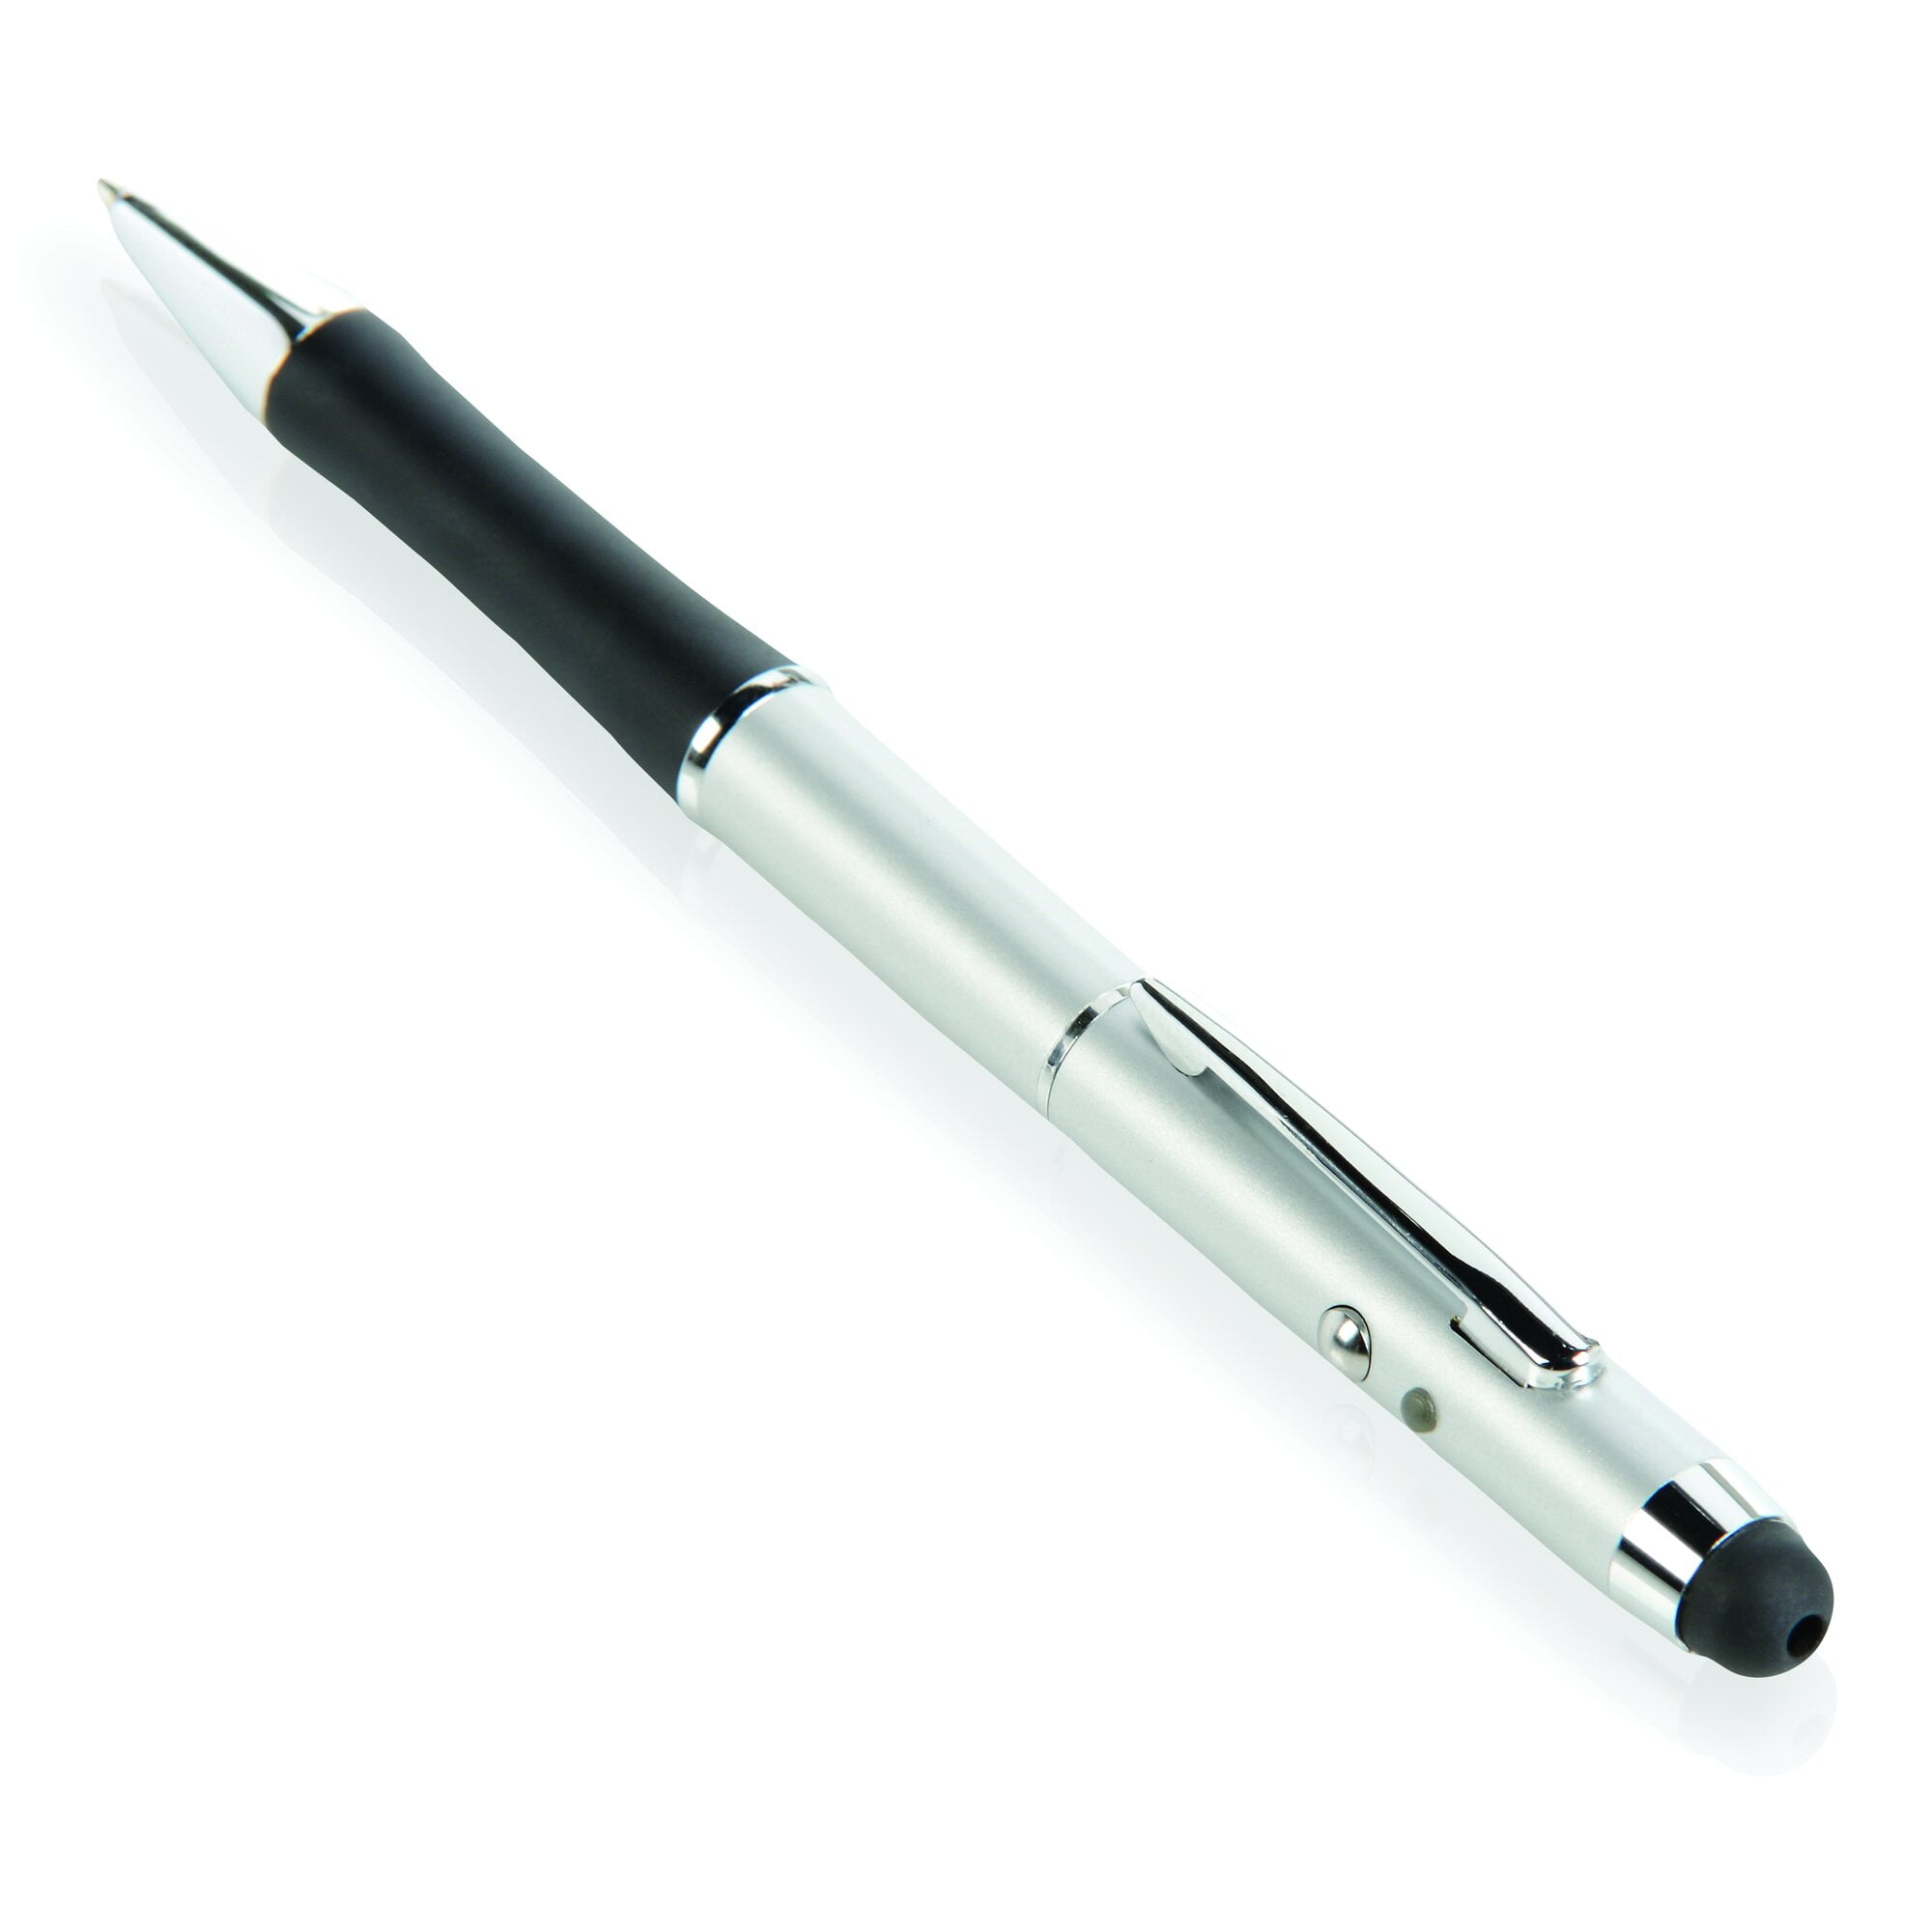 5Pack Green Dot Laser Pointer Pen Beam Light 1mW Long Range USB Rechargeable Pen 